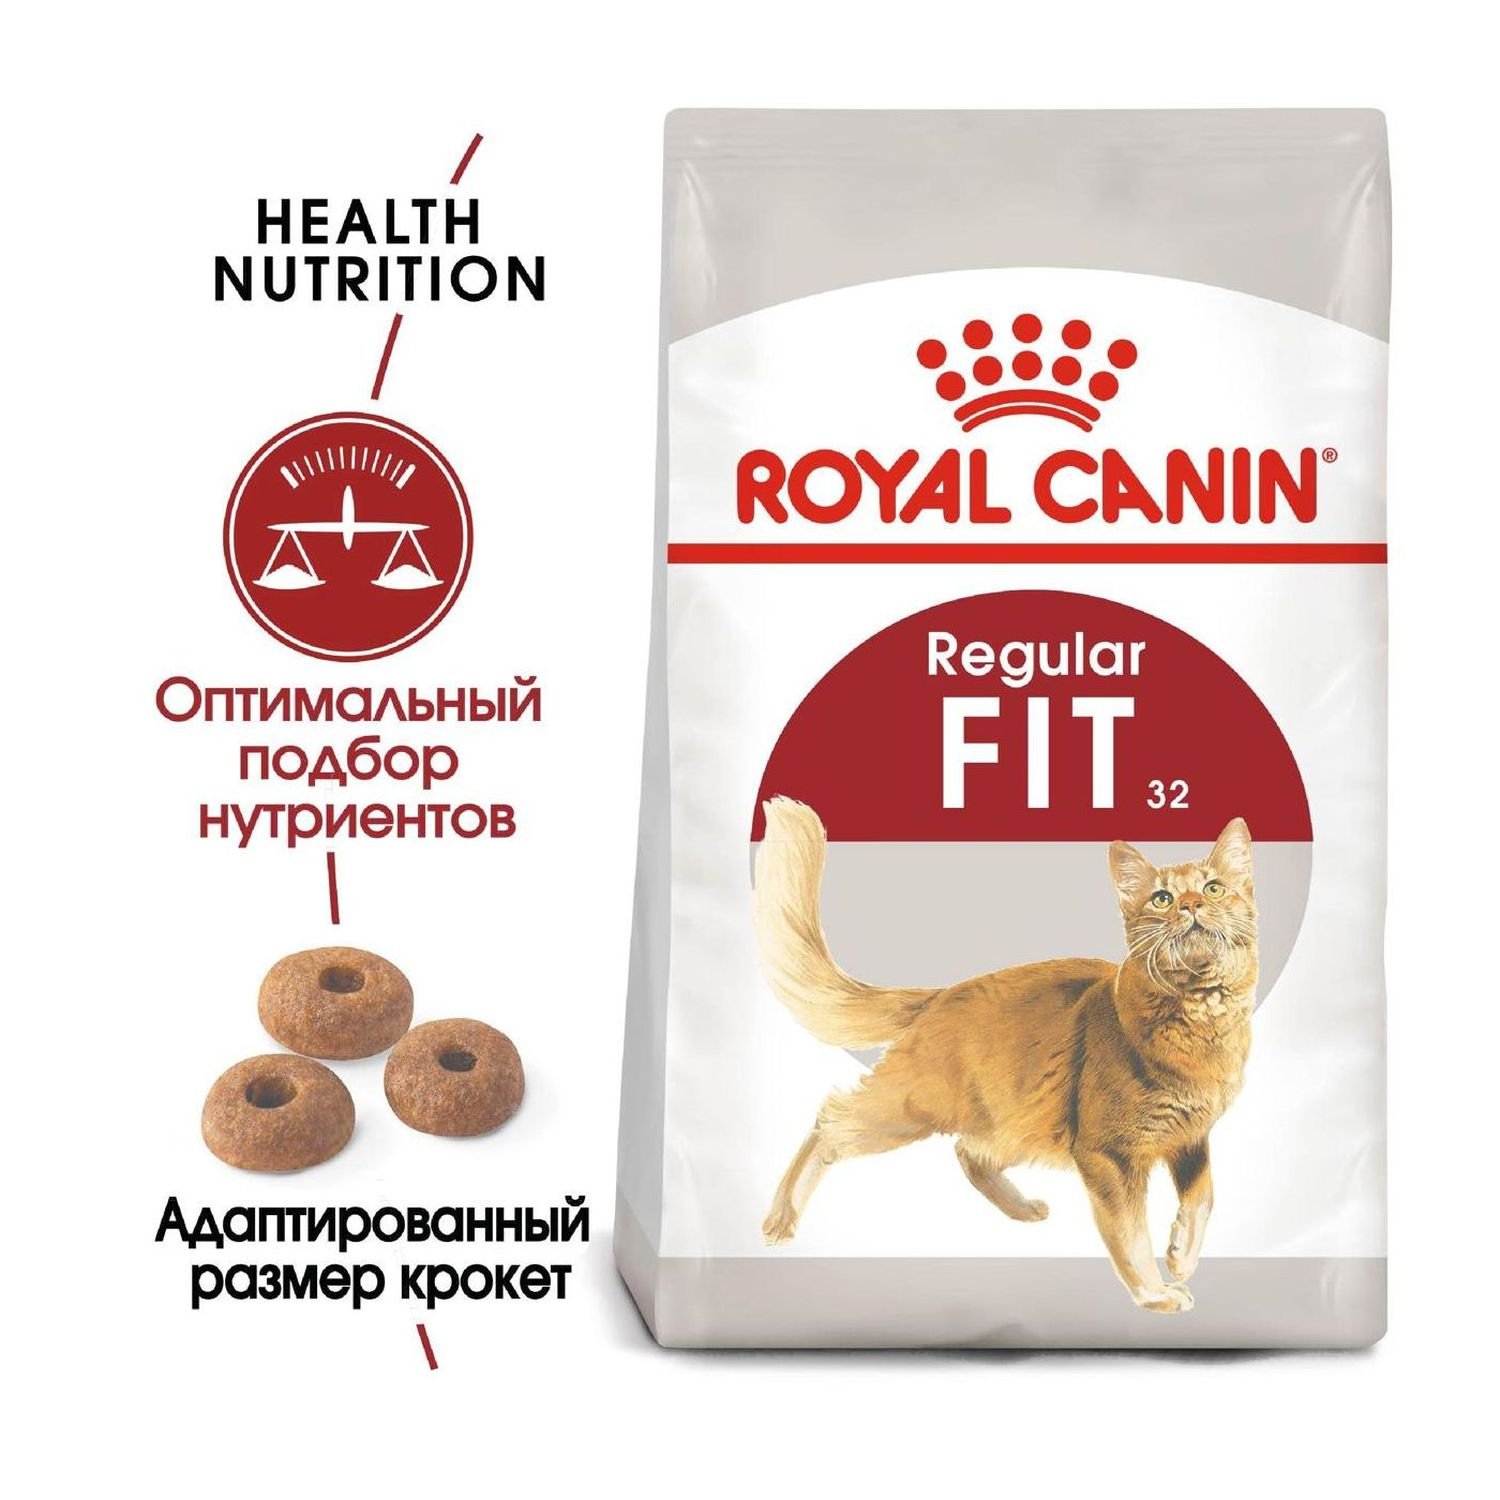 Корм сухой Royal Canin Fit 32 для взрослых кошек имеющих доступ на улицу, 400 гр.